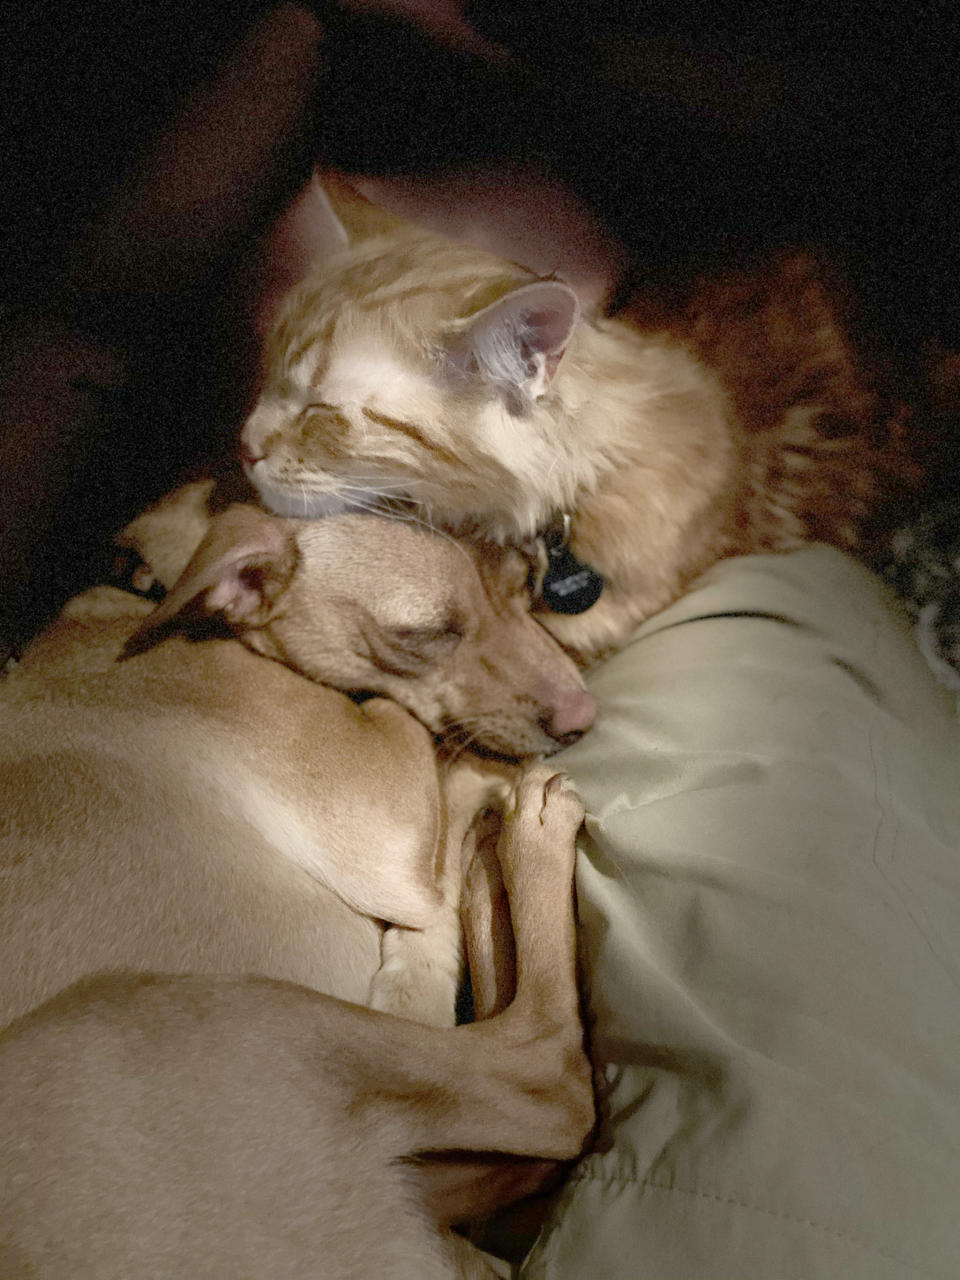 Nicole nennt ihre beiden Haustiere "unzertrennlich" - die Fotos belegen dies eindrücklich (Bild: Caters News)